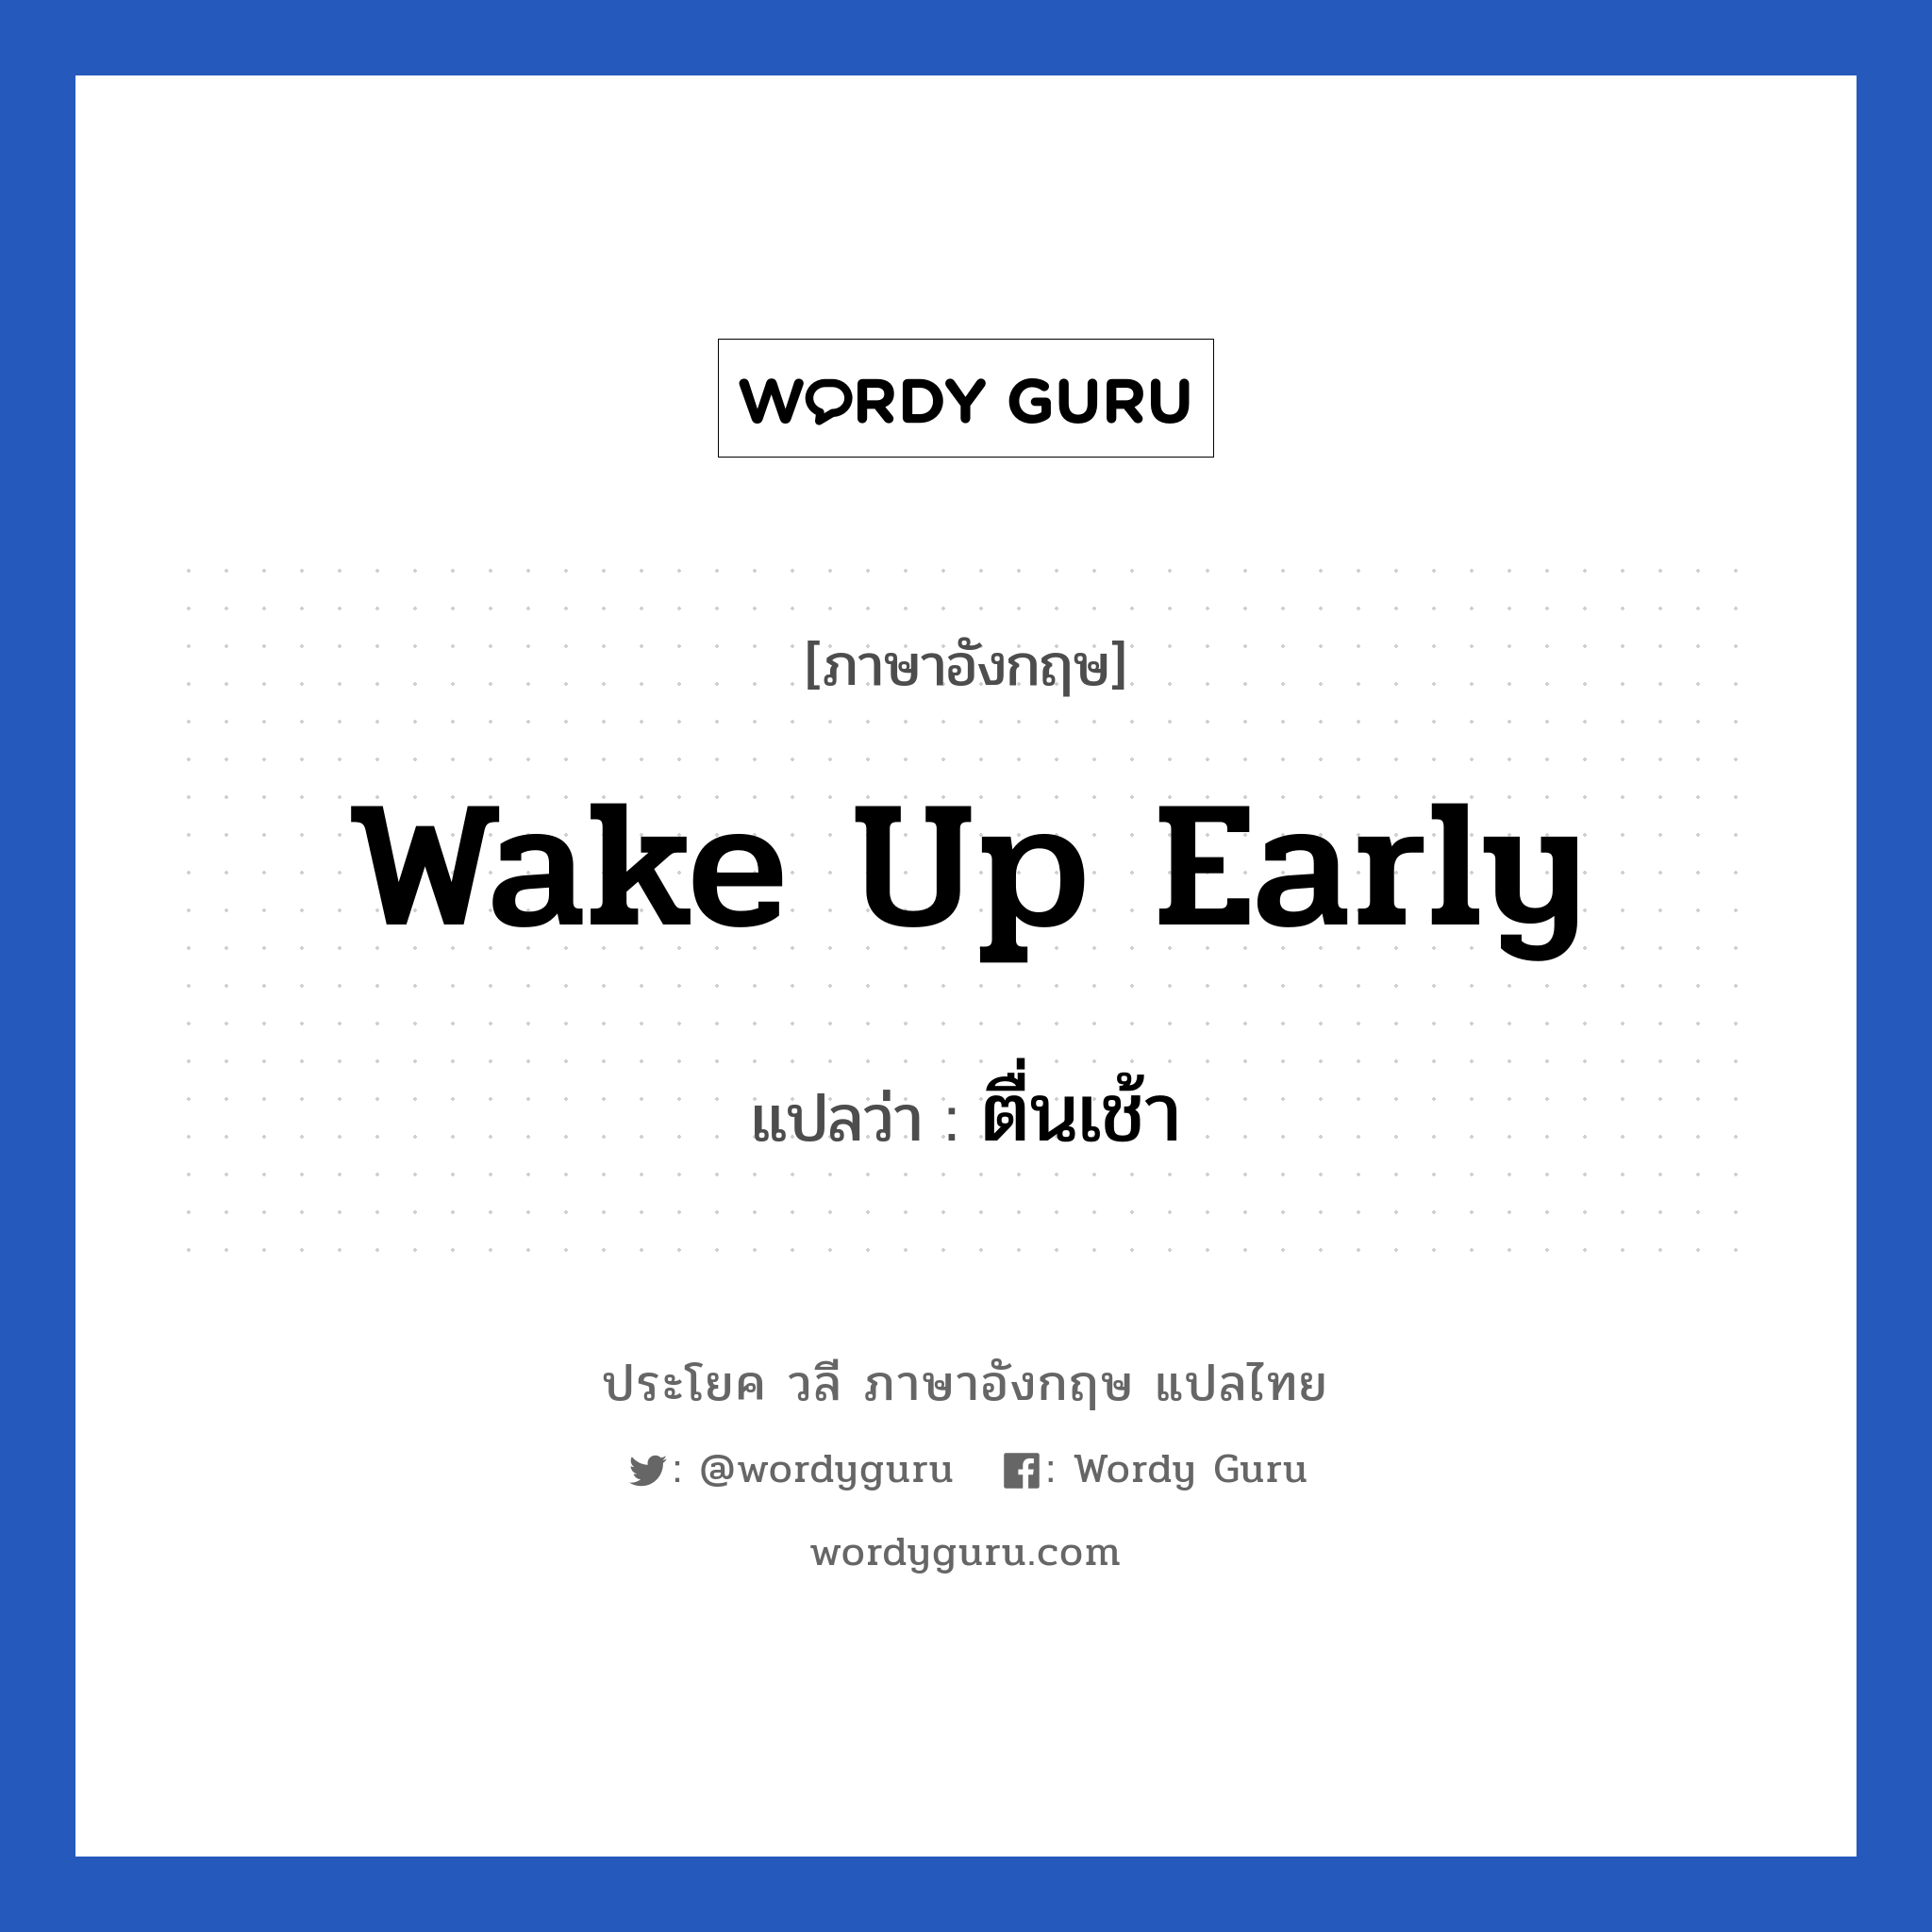 wake up early แปลว่า?, วลีภาษาอังกฤษ wake up early แปลว่า ตื่นเช้า